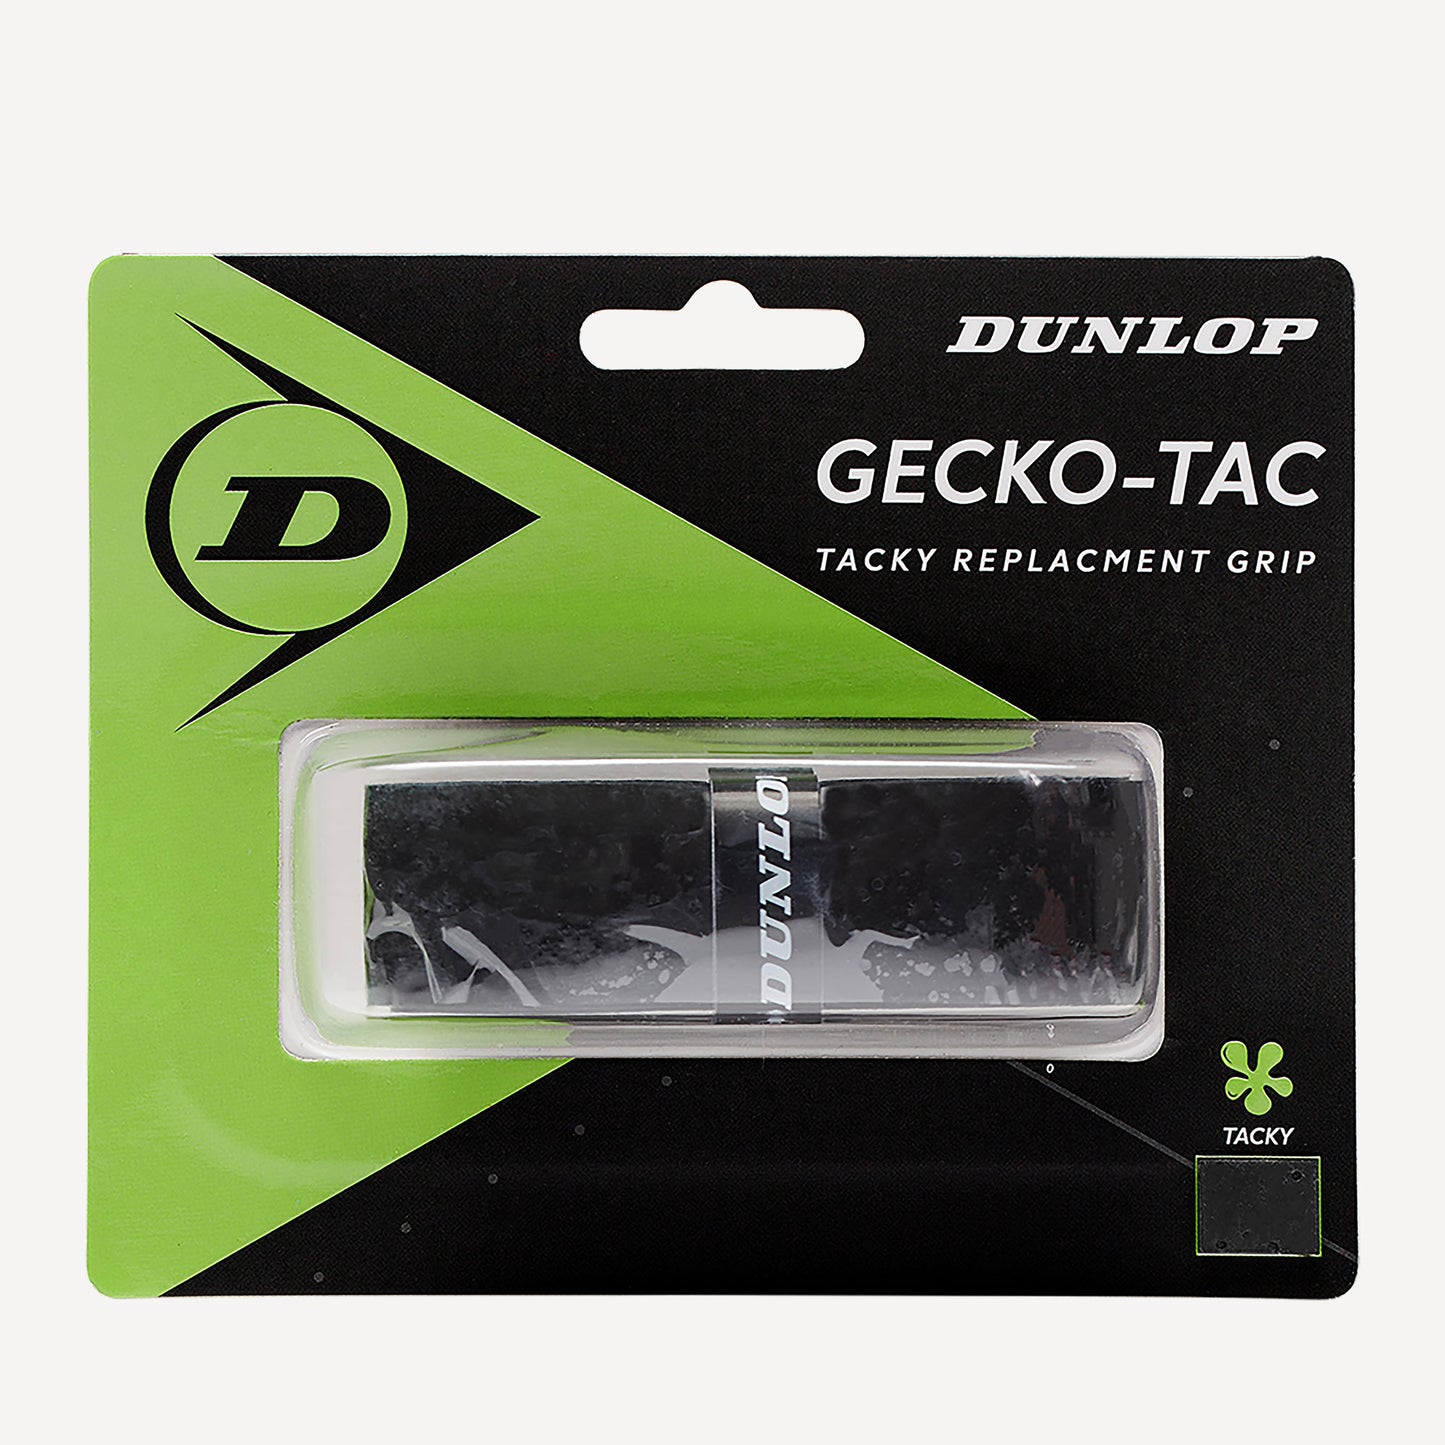 Dunlop Gecko-Tac Tennis Replacement Grip 1